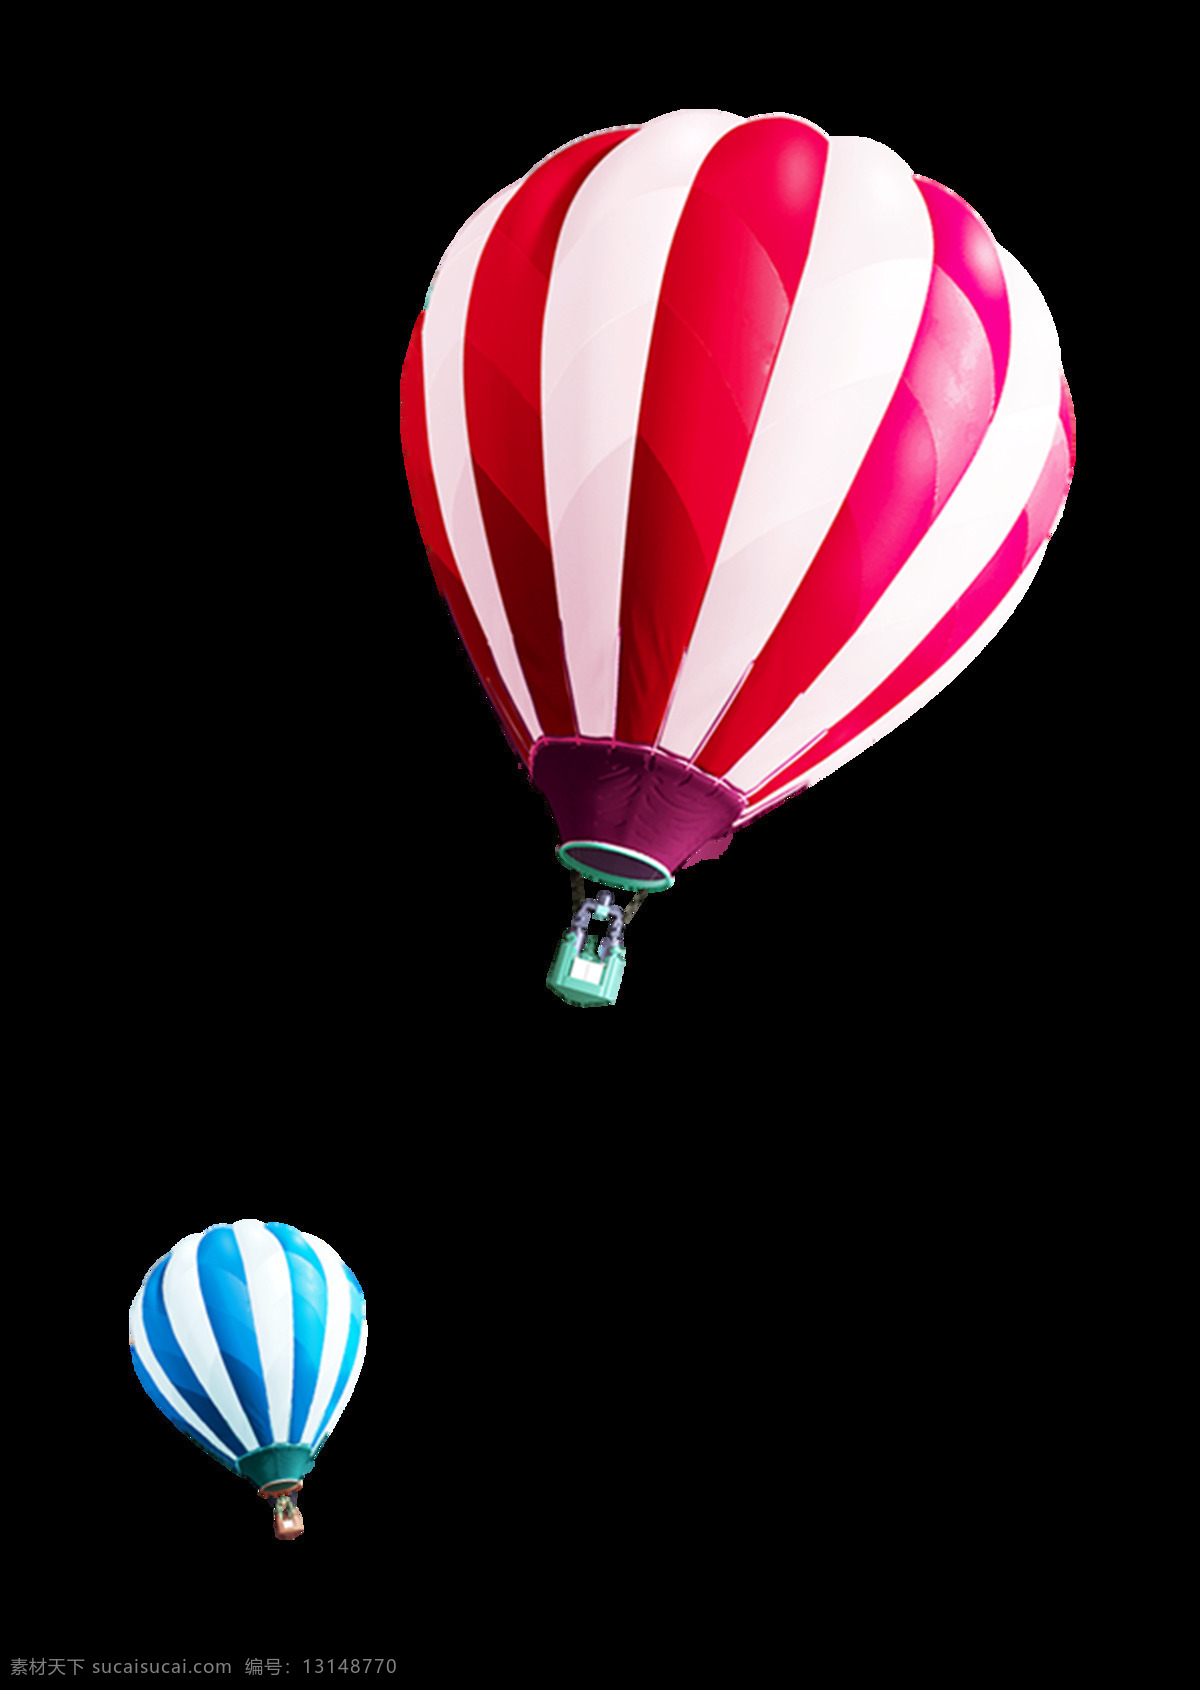 热气球 气球 插图 旅程 娱乐 度假 冒险 飞艇 飞行 热气球节 活动氛围 矢量